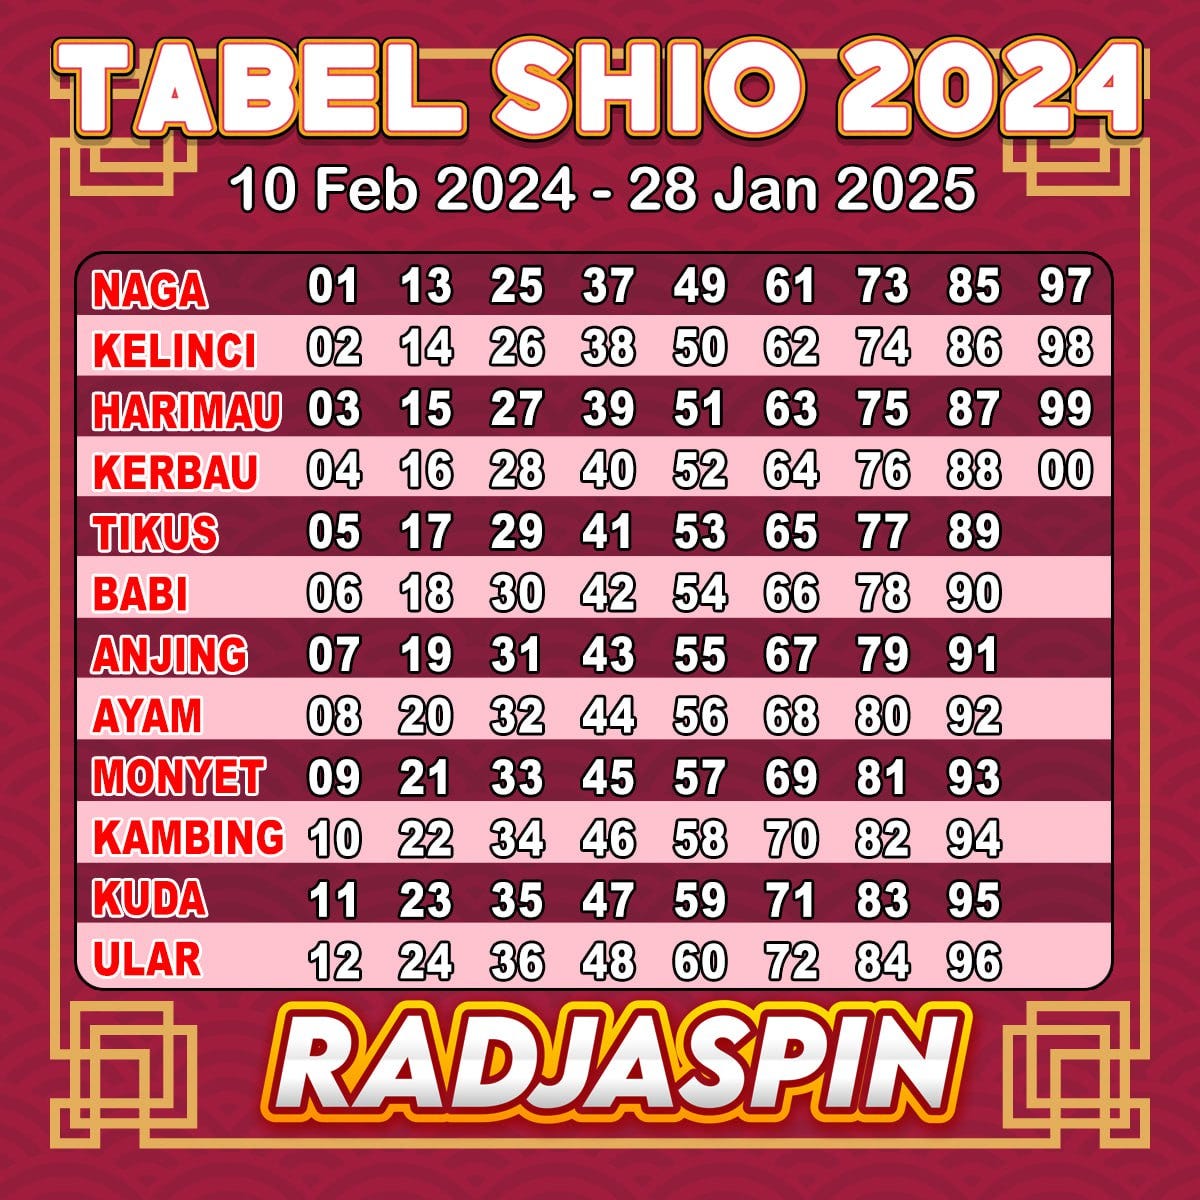 Tabel Shio 2024 abdul sidik Medium